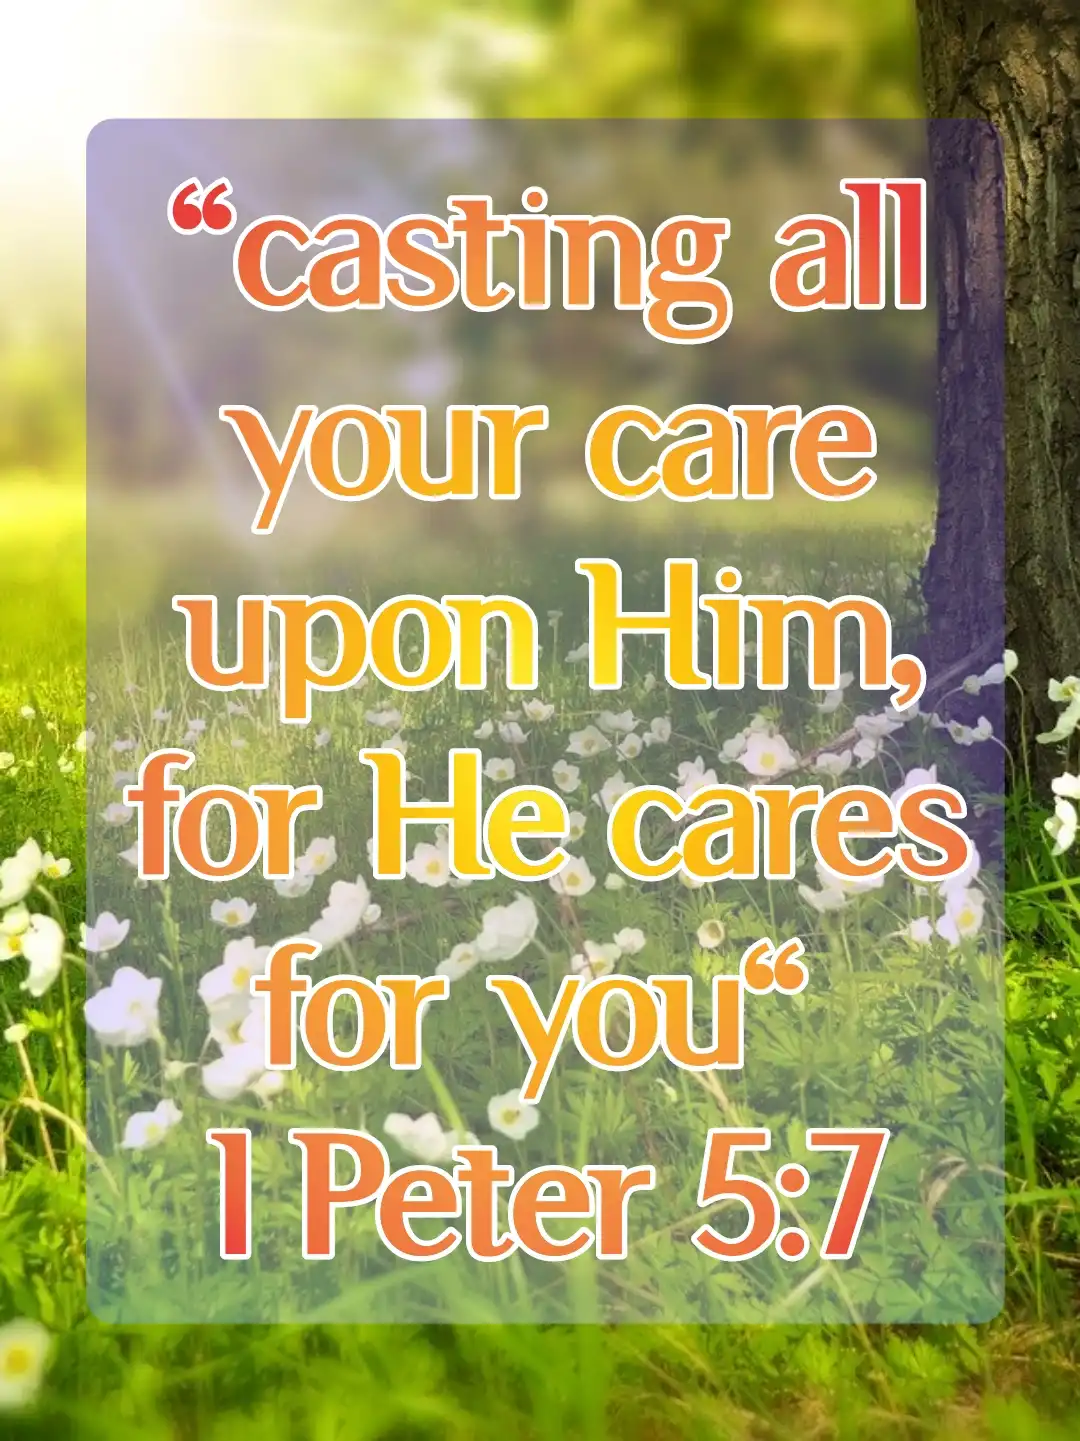 today bible verse (1 Peter 5:7)